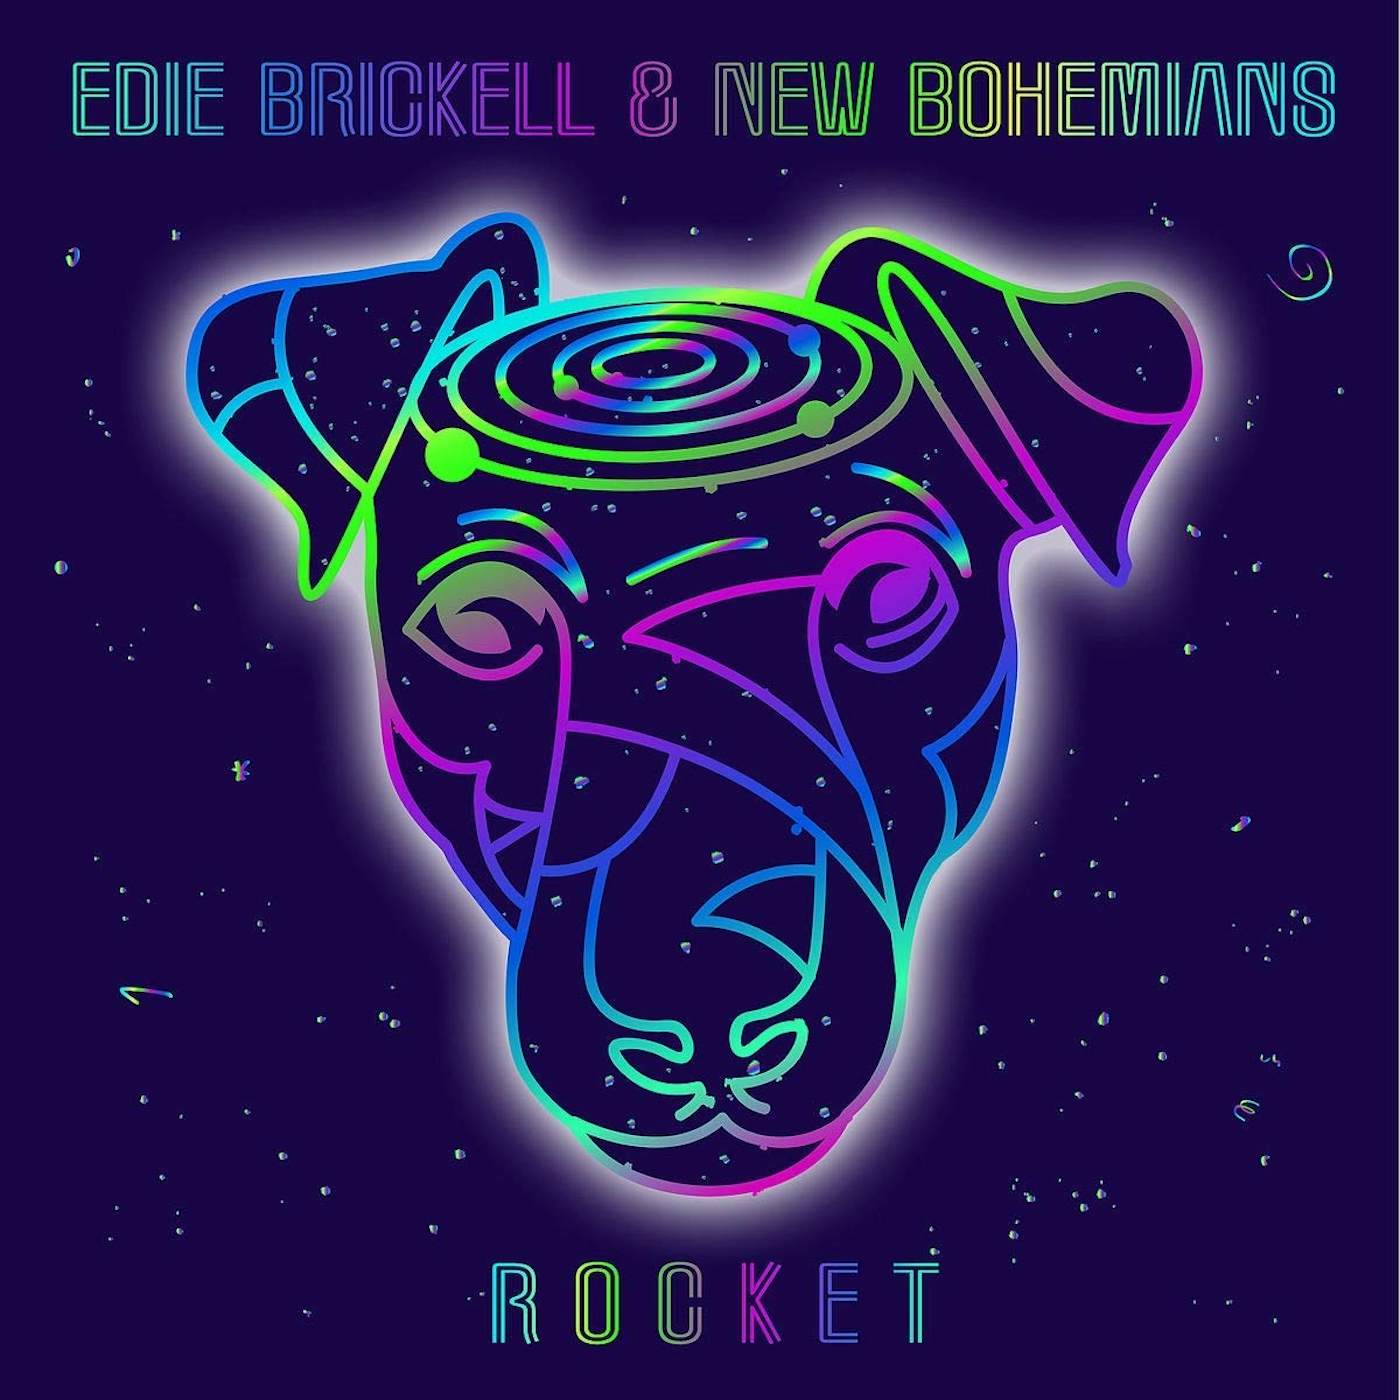 Edie Brickell & New Bohemians ROCKET CD